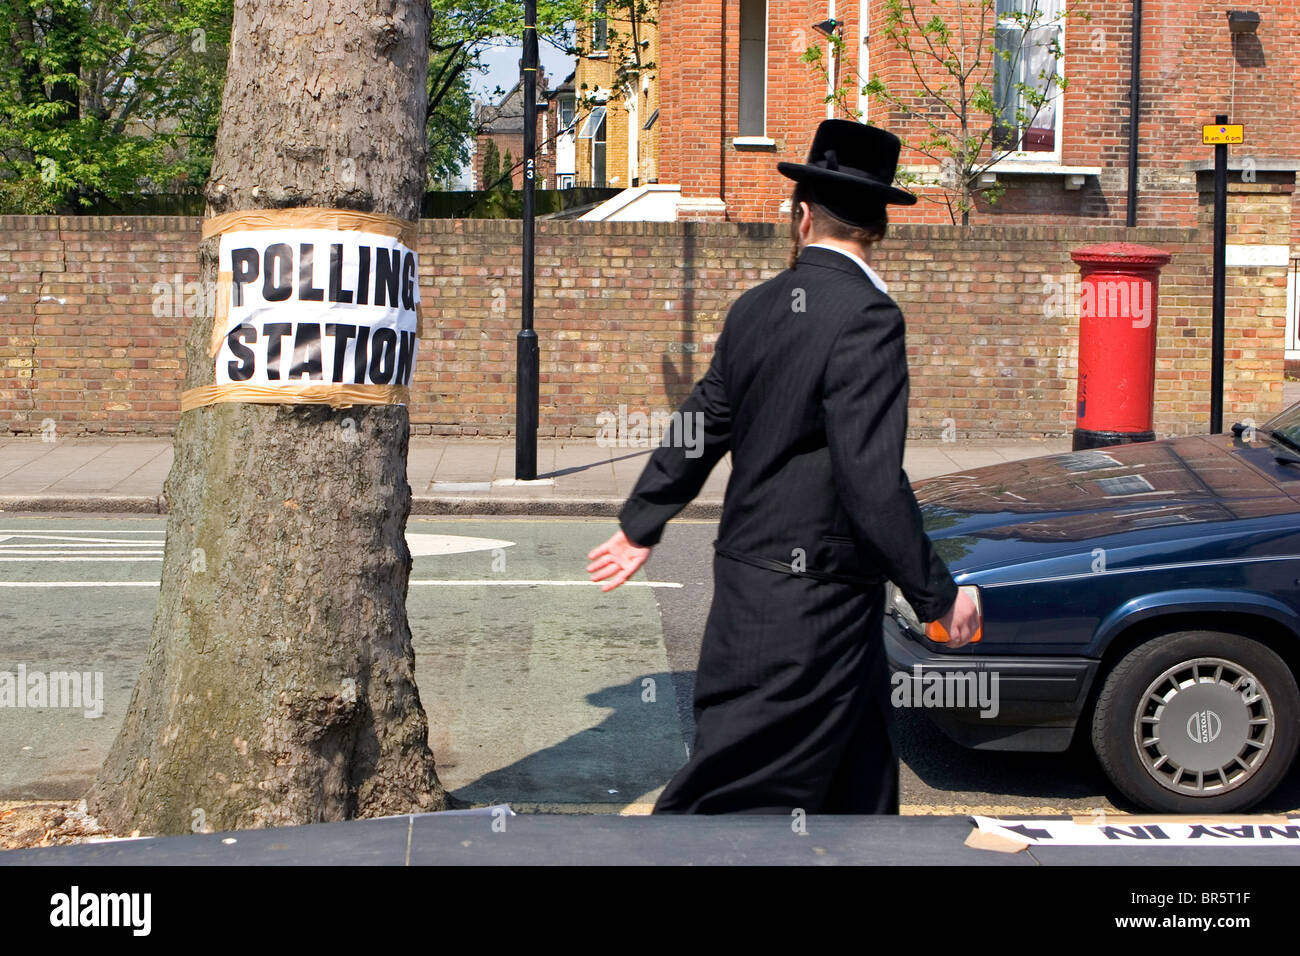 Un ebreo ortodosso uomo a camminare verso il basso Portland Avenue passato una Volvo e un segno per la locale stazione di polling nastrato a un albero. Foto Stock